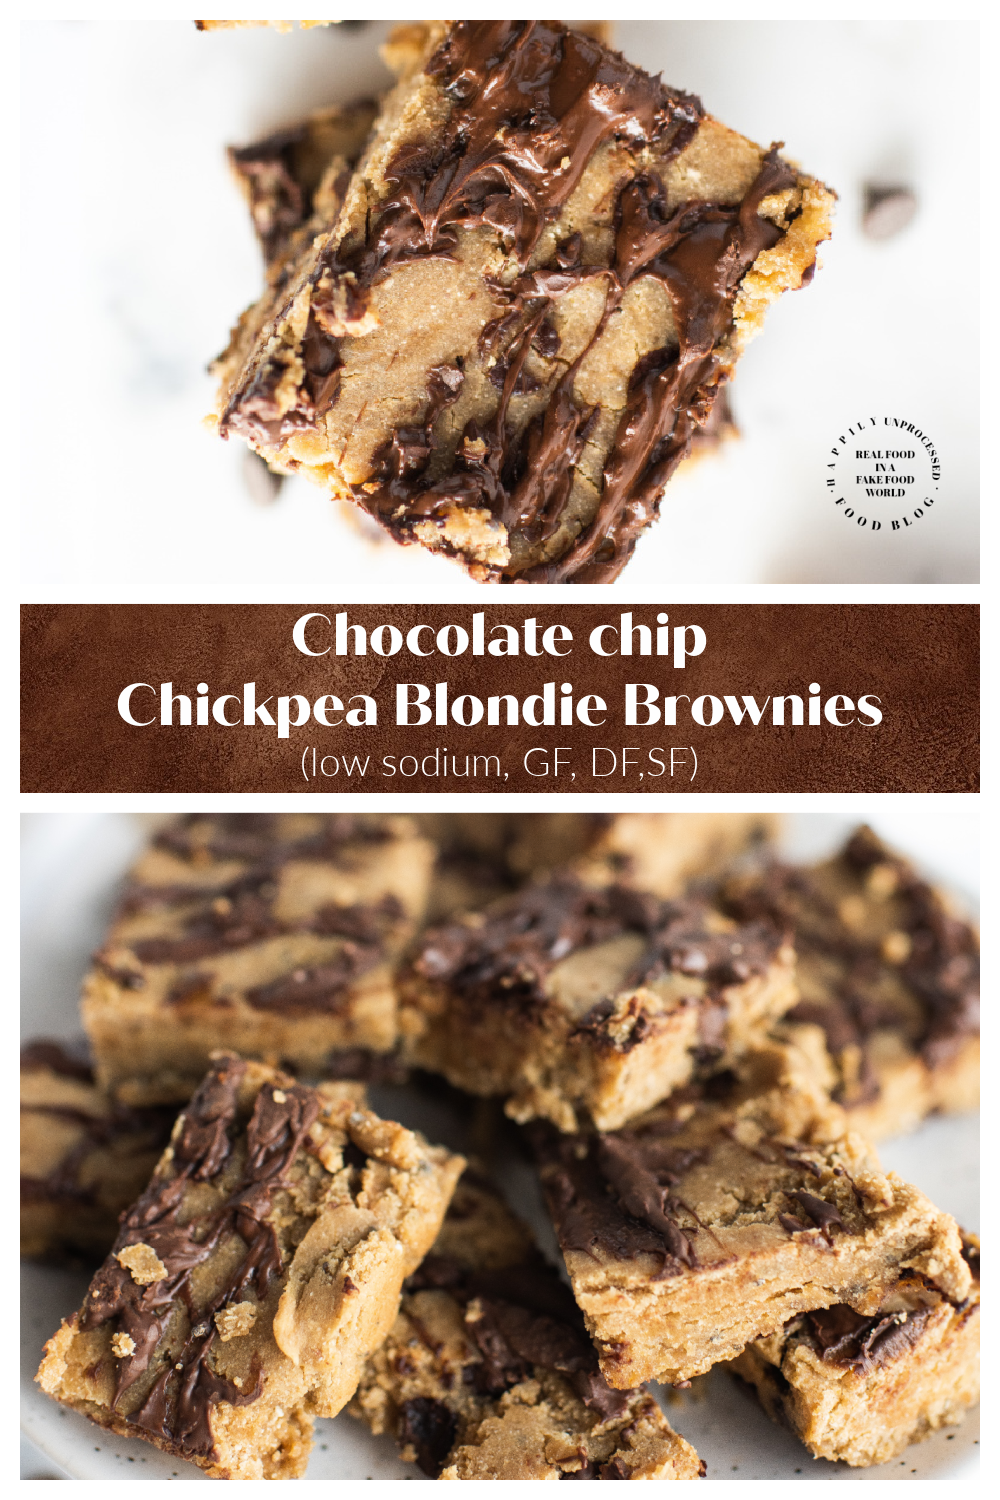 Chocolate Chip Chickpea Blondie Brownies glutenfree dairyfree lowsodium - Chocolate Chip Chickpea Blondie Brownies